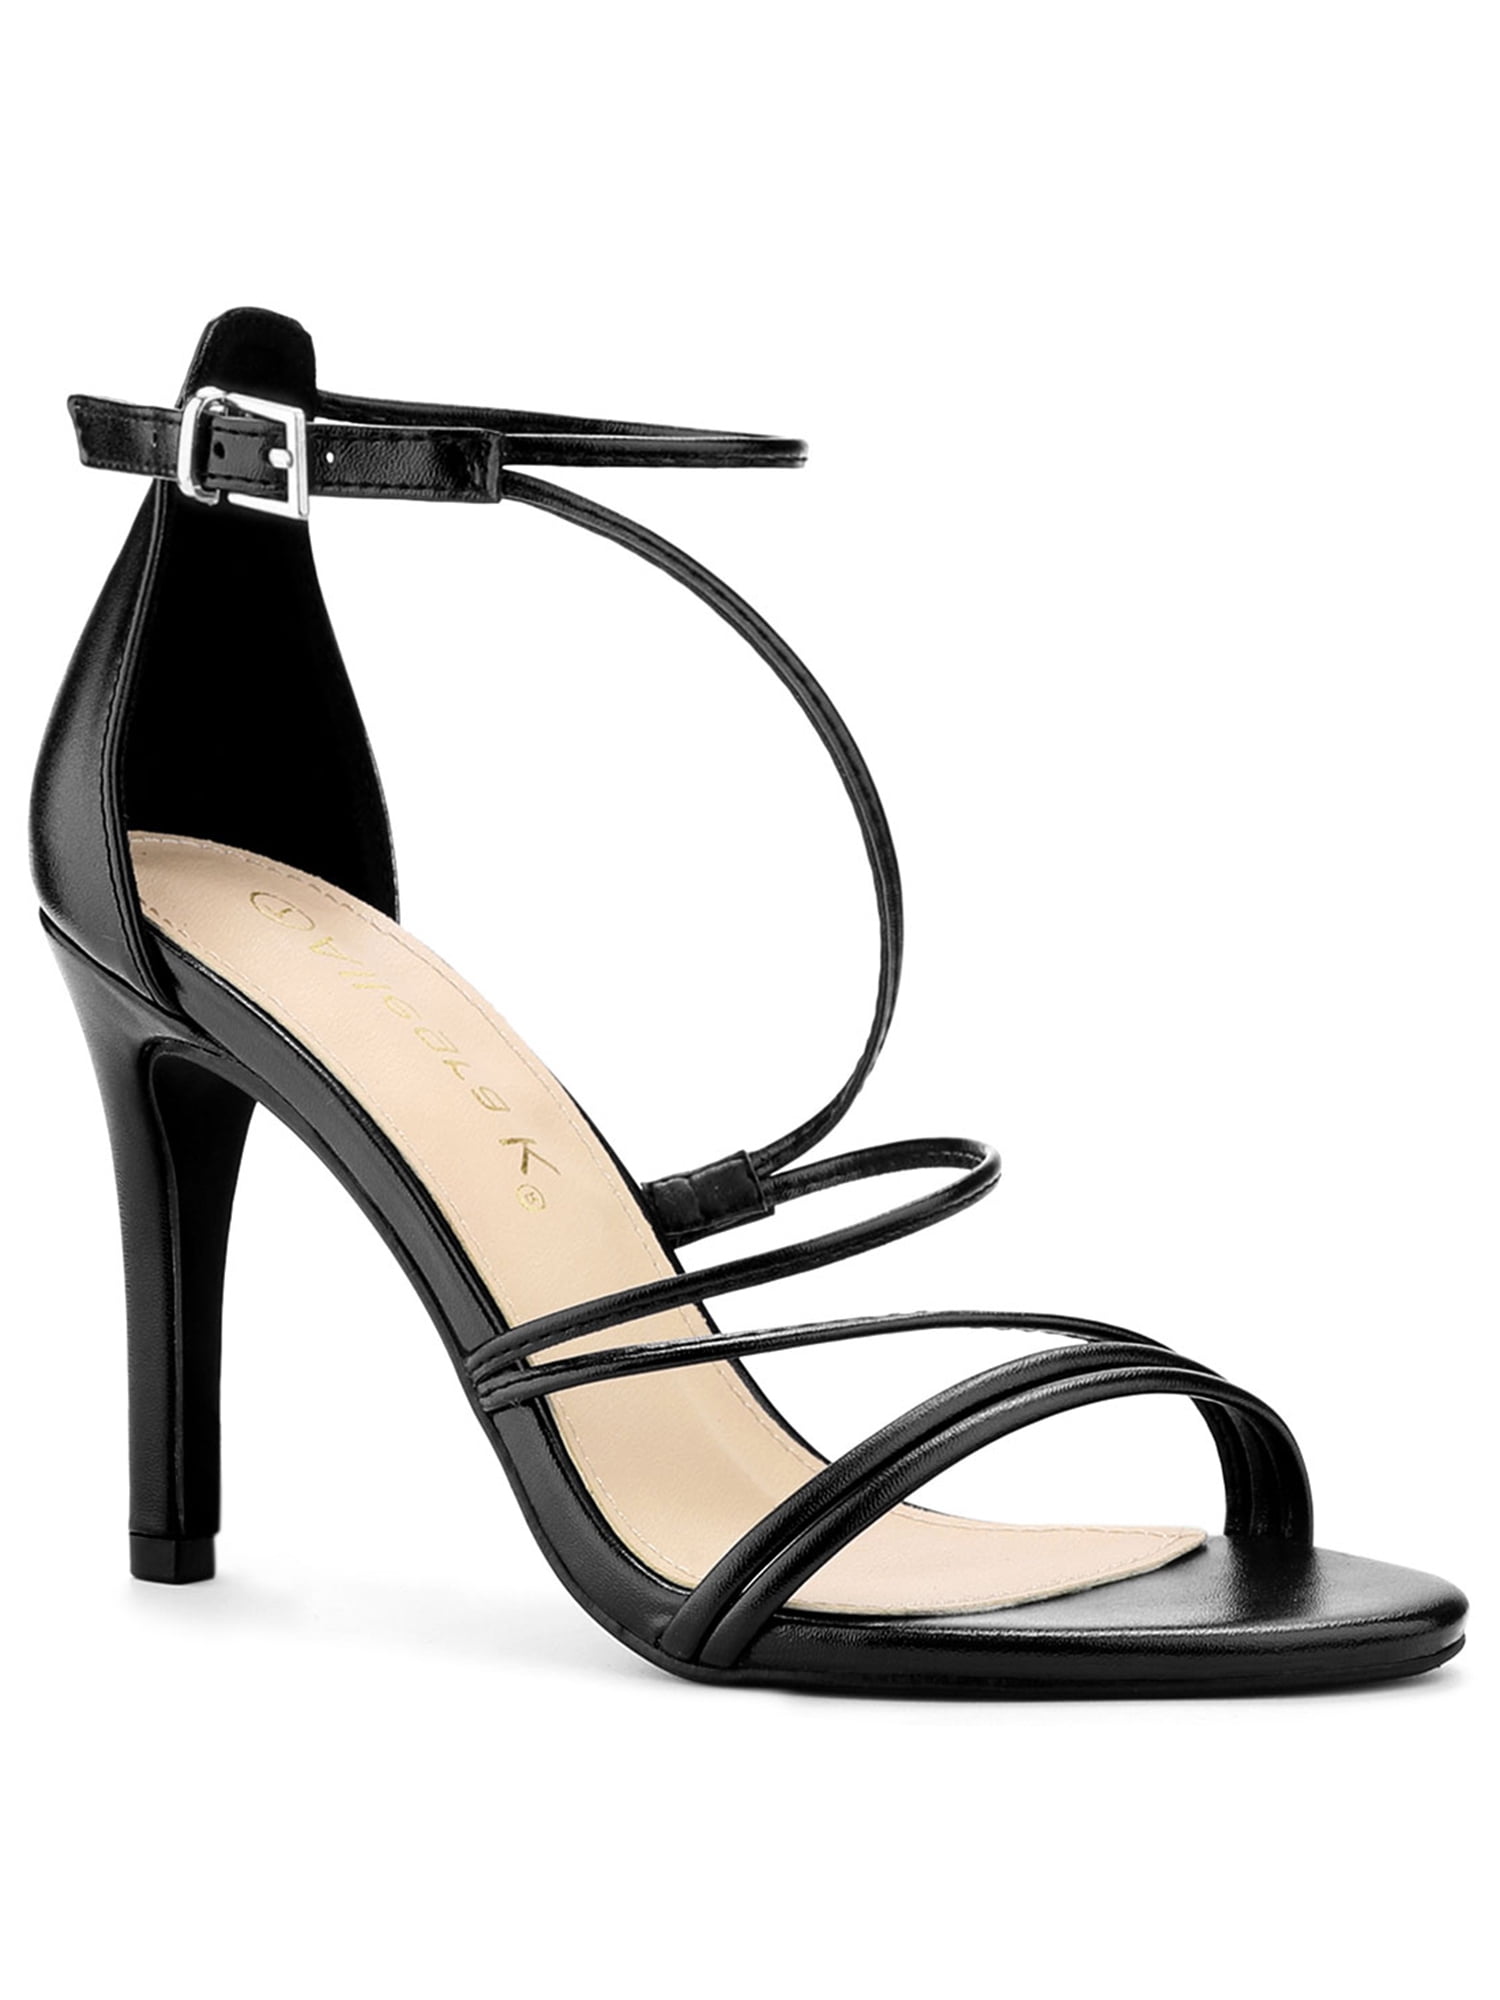 Allegra K Women's Evening Strappy Stiletto High Heels Sandals - Walmart.com